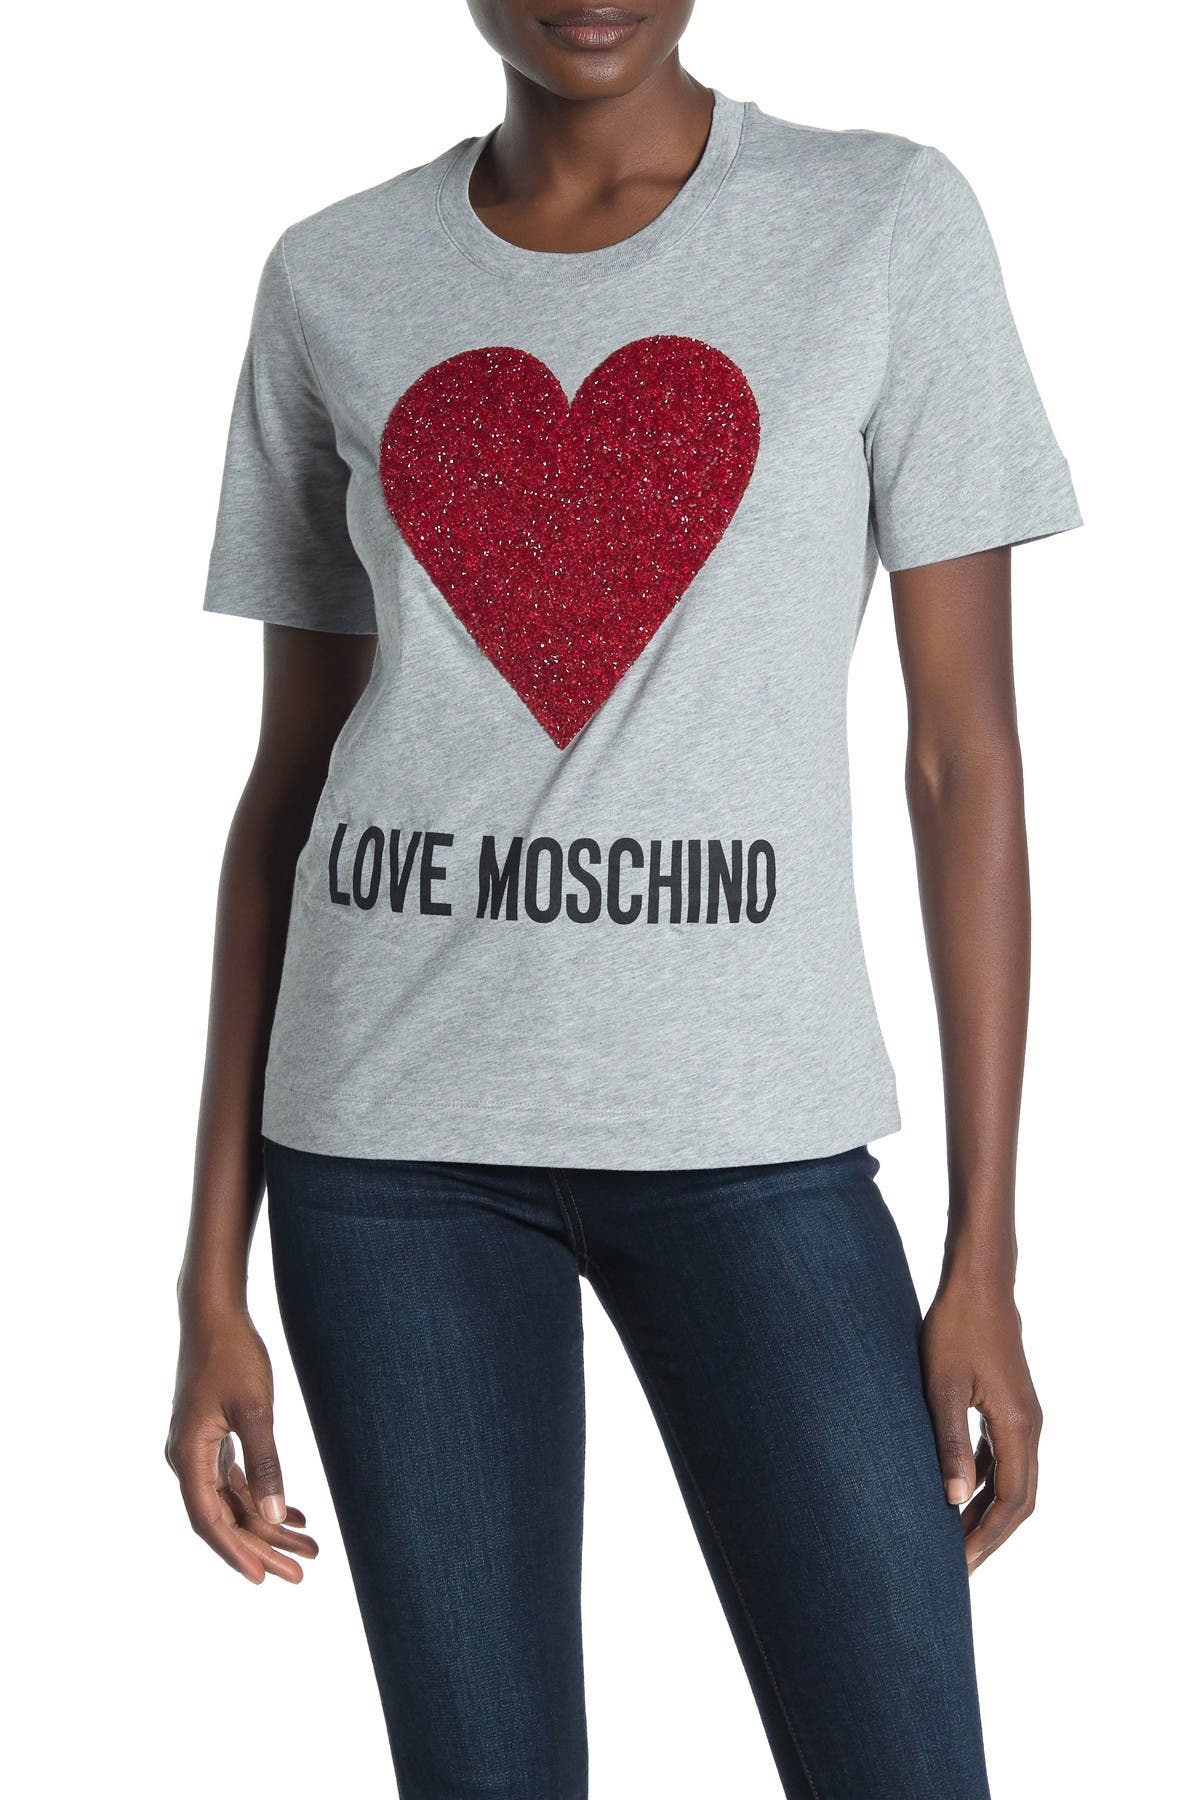 love moschino t shirt heart